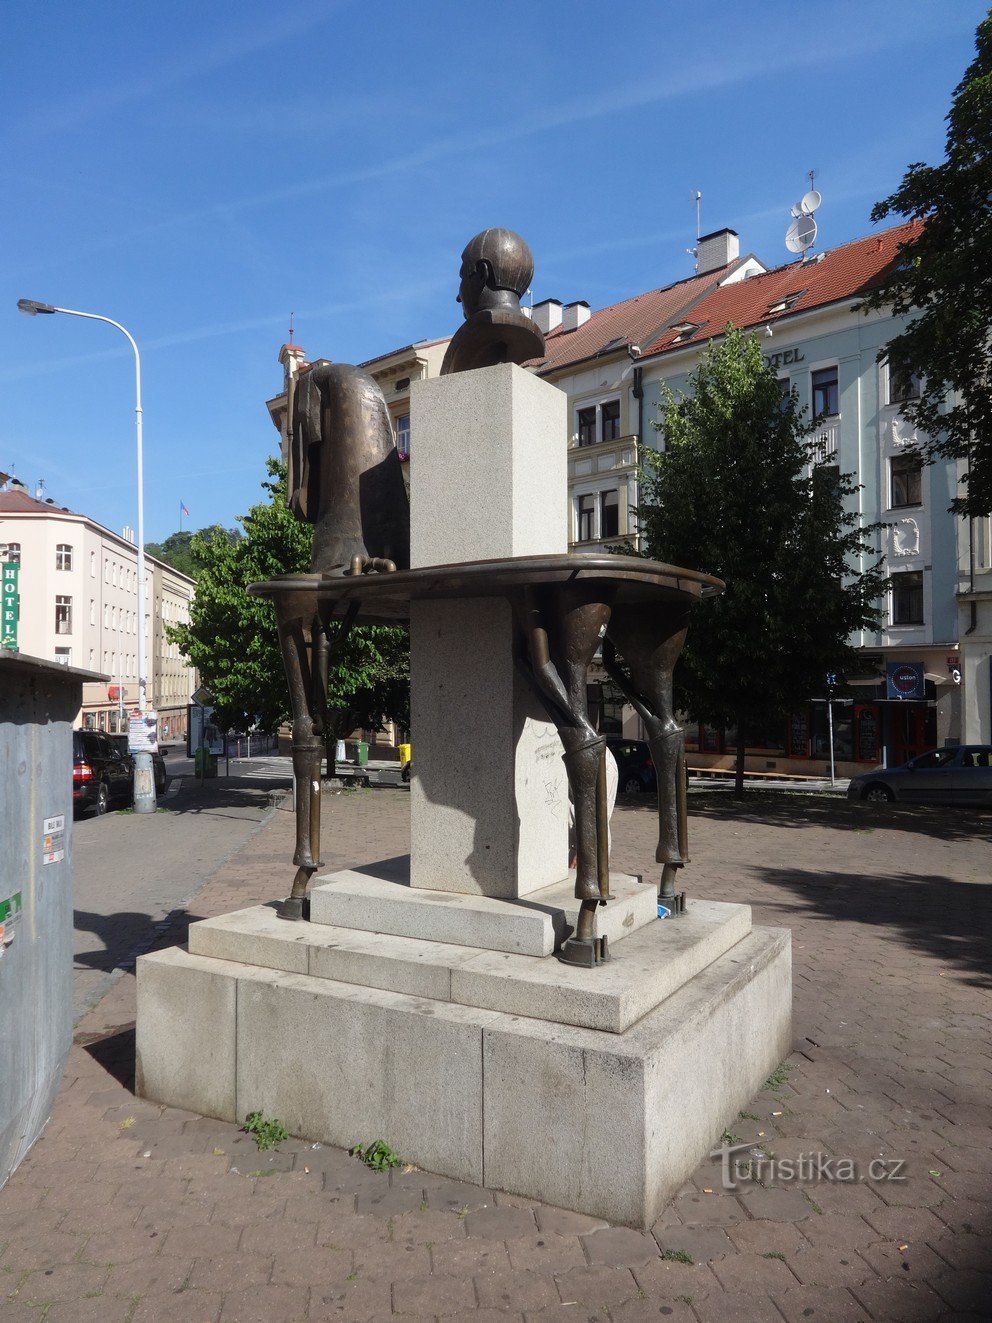 Statuia ecvestră a lui Jaroslav Hašek și a Bunului Soldat Švejk